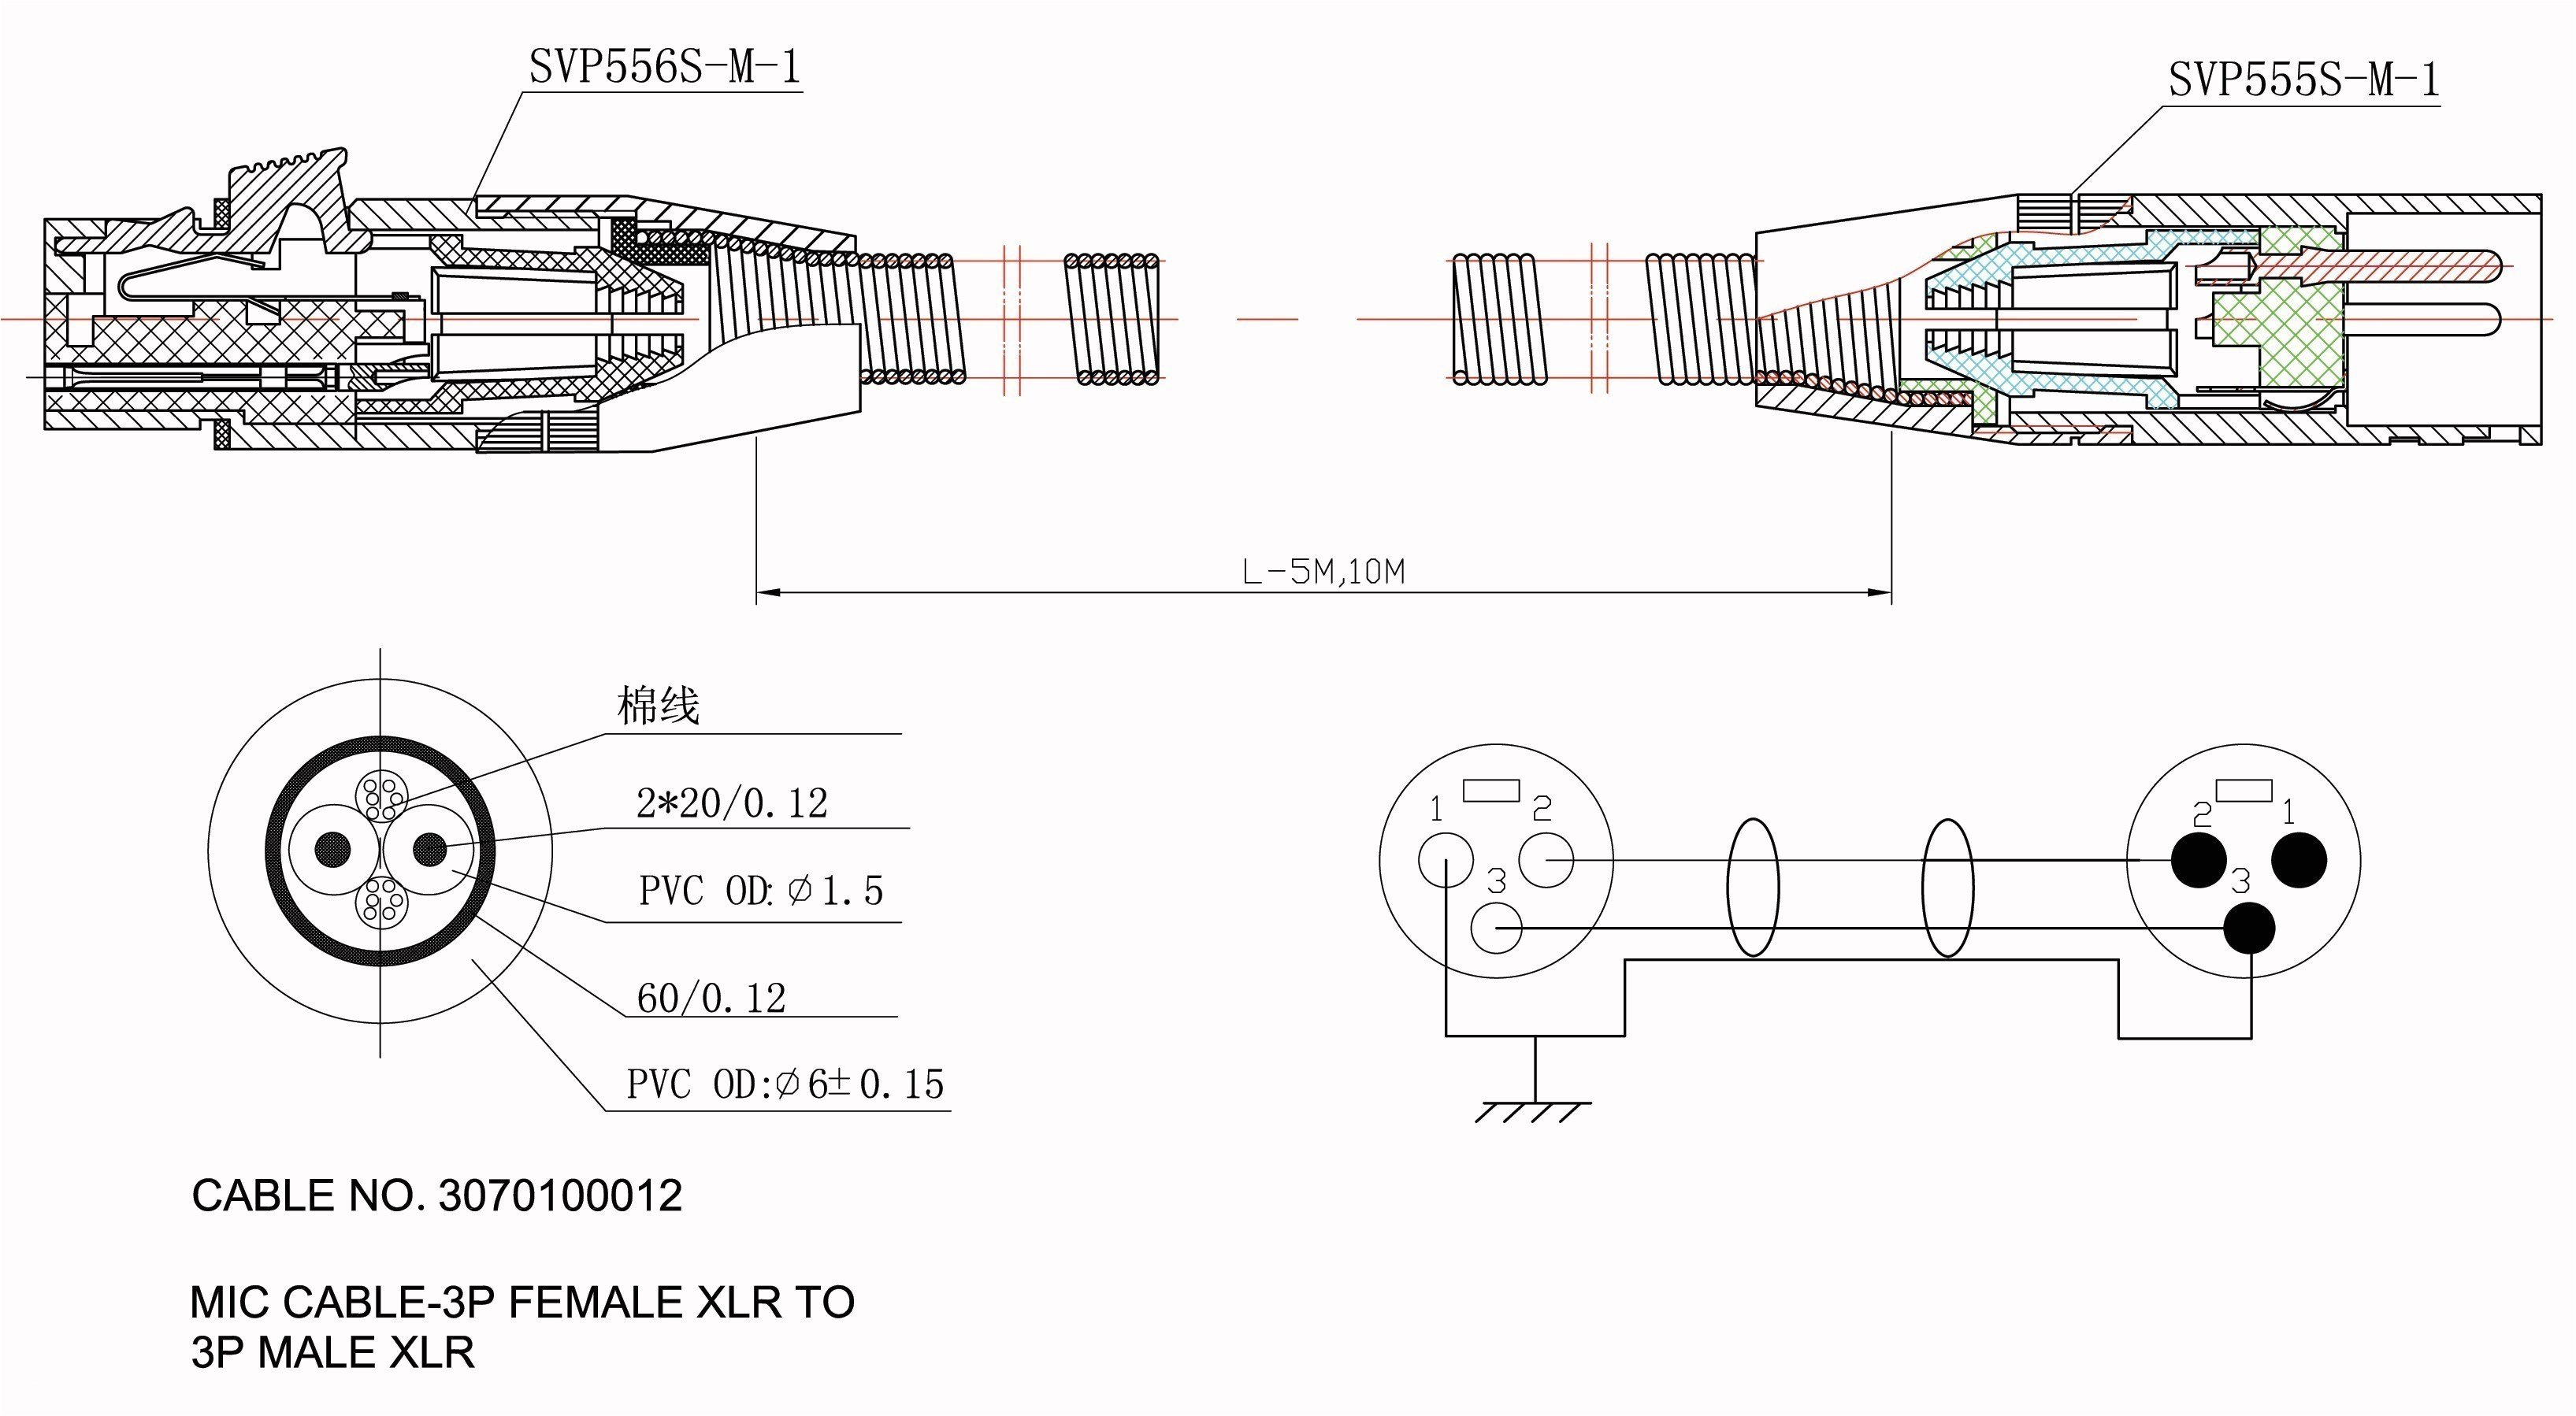 m916 wiring diagram wiring diagram hc2401he honda engine wiring diagram